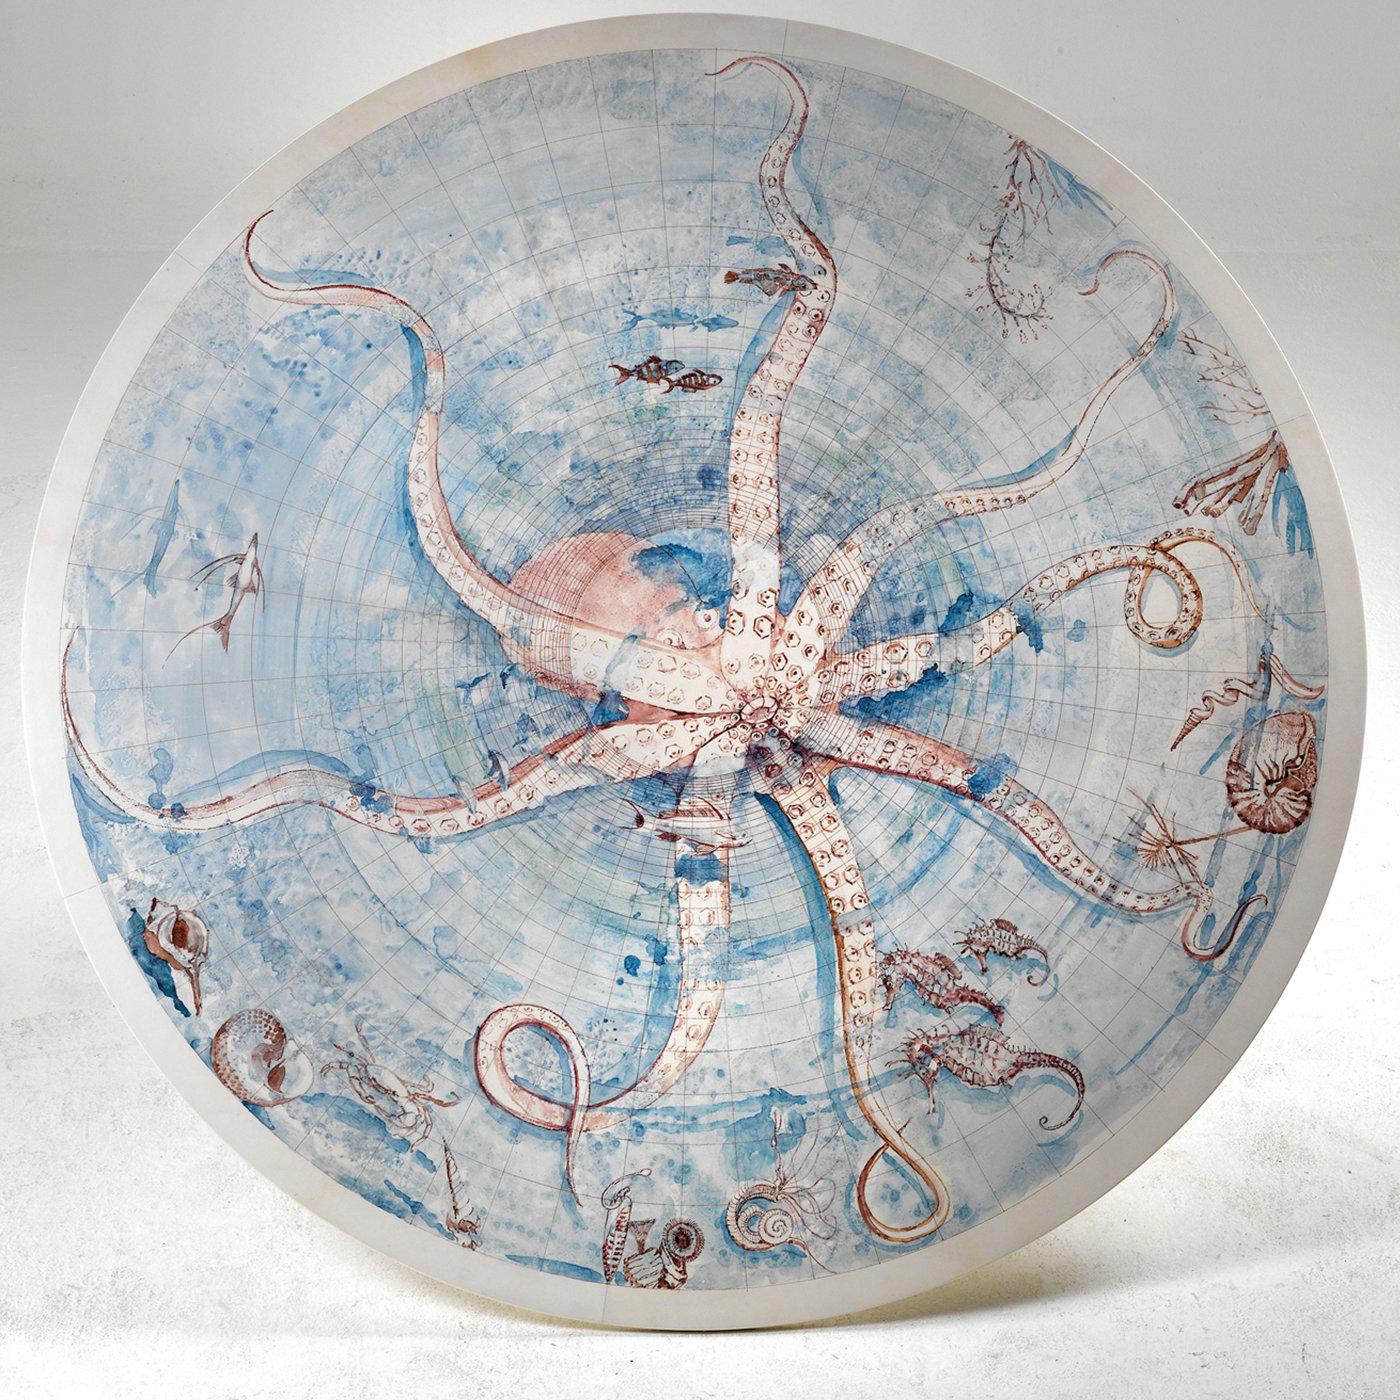 Benannt nach dem zarten Meeresmotiv, das der römische Künstler Giancarlo Micheli auf die runde Pergamentplatte gemalt hat, ist der Octopus Table ein einzigartiges Stück, das die handwerkliche Qualität und Kreativität von Tura voll zum Ausdruck